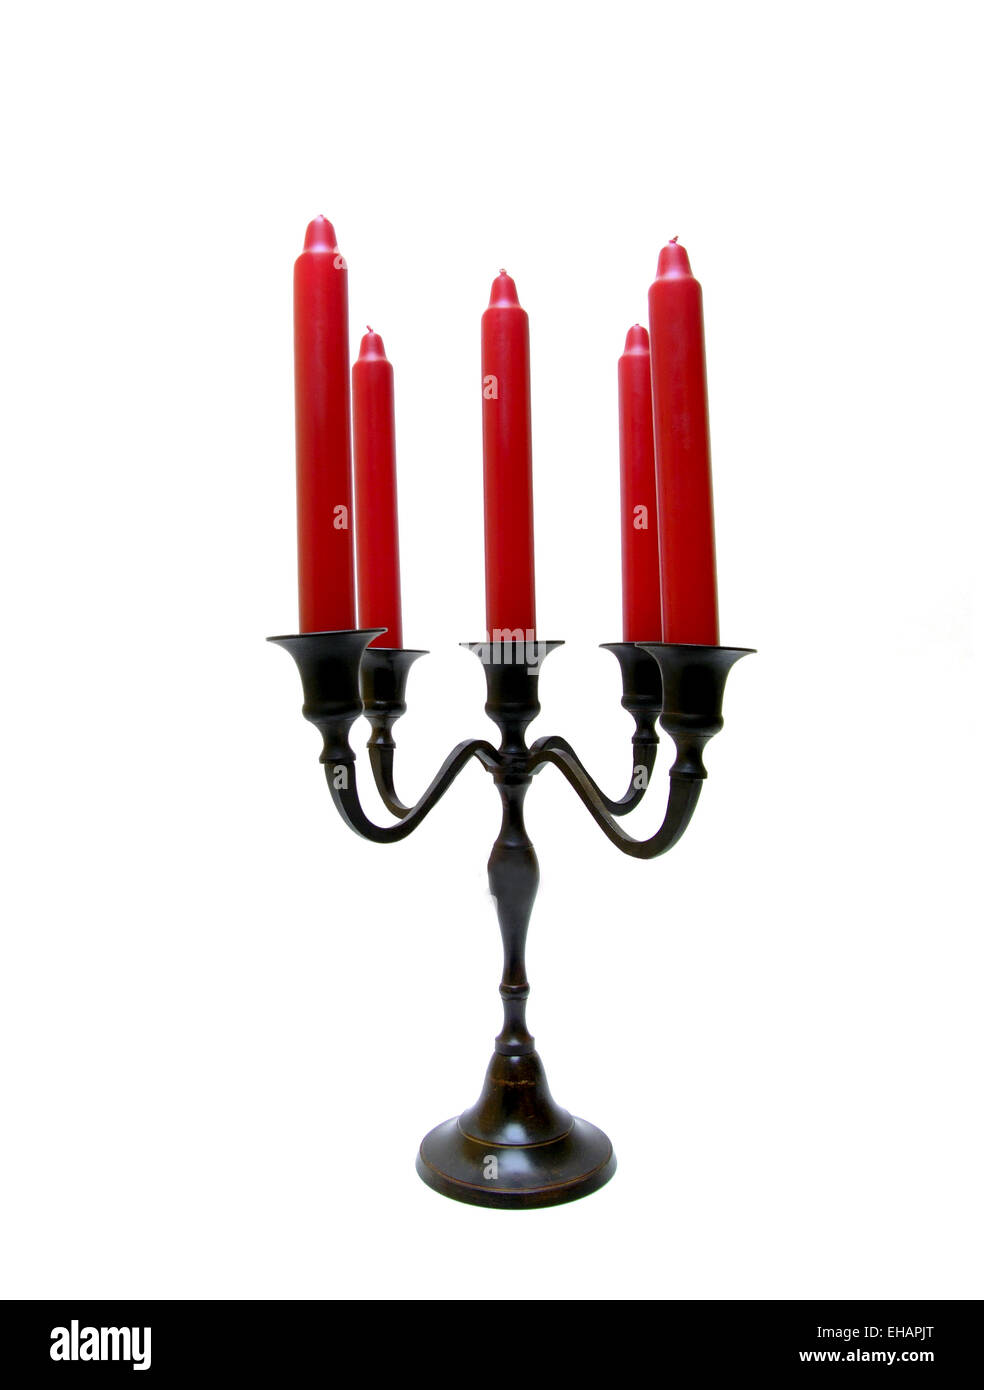 Kerzen und Halter / bougies rouge Banque D'Images